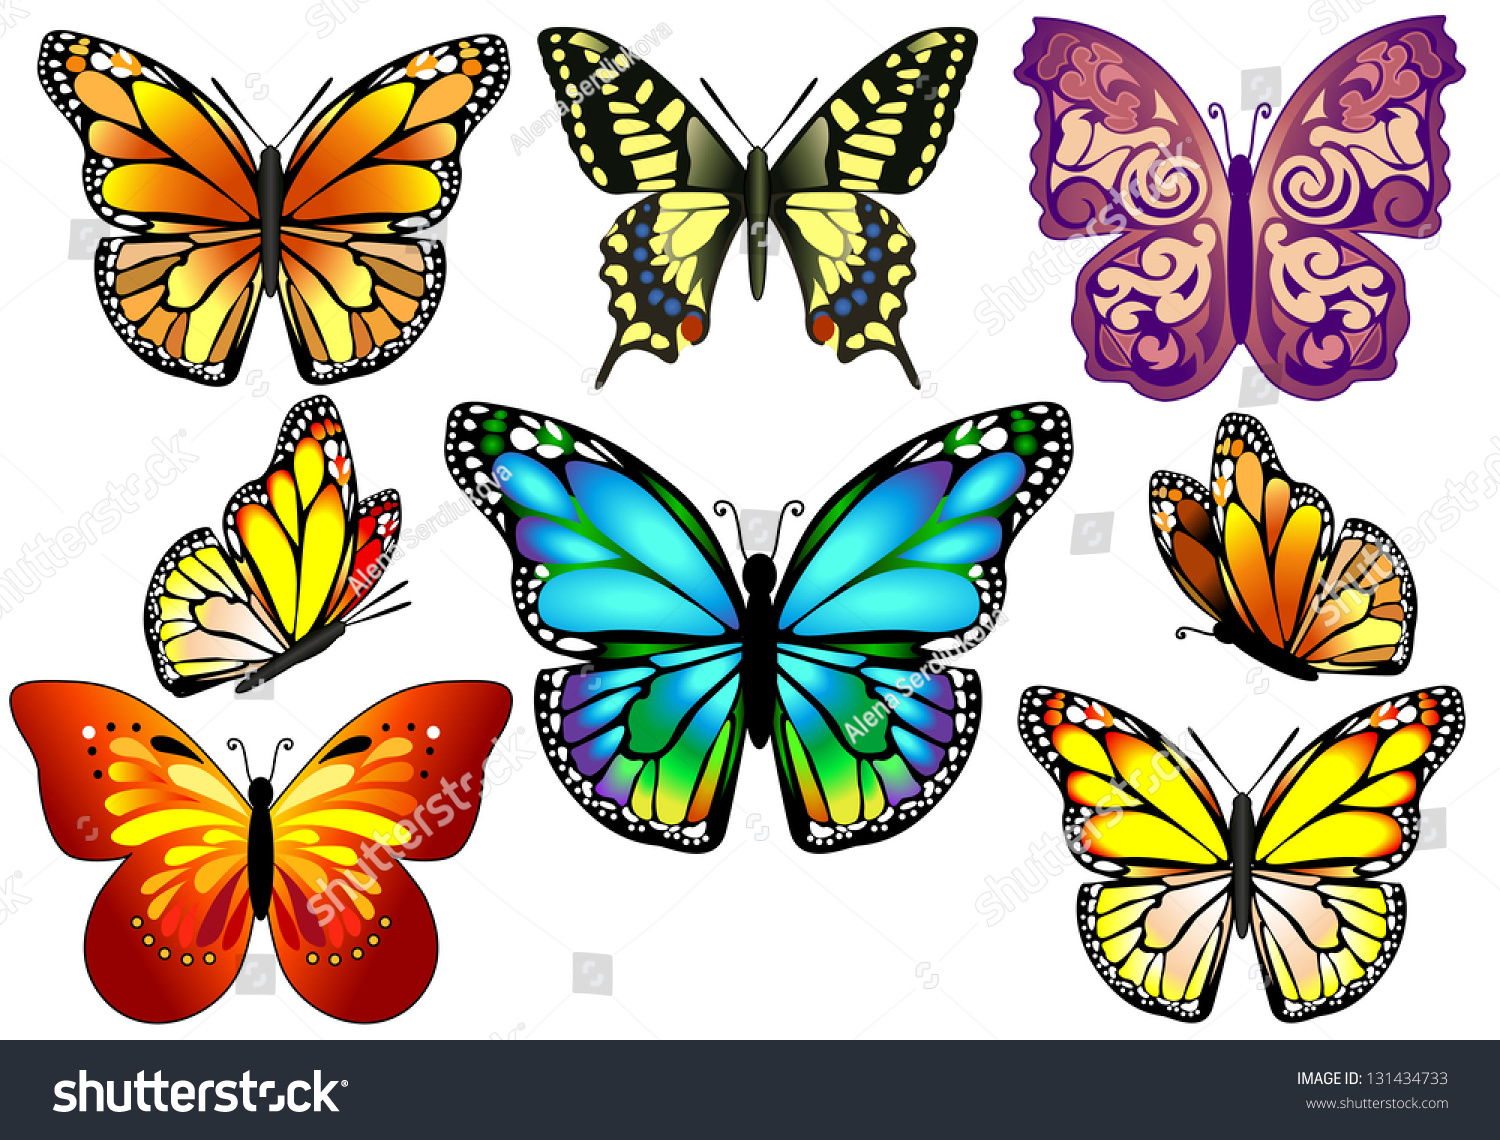 Бабочки для вырезания цветные объемные